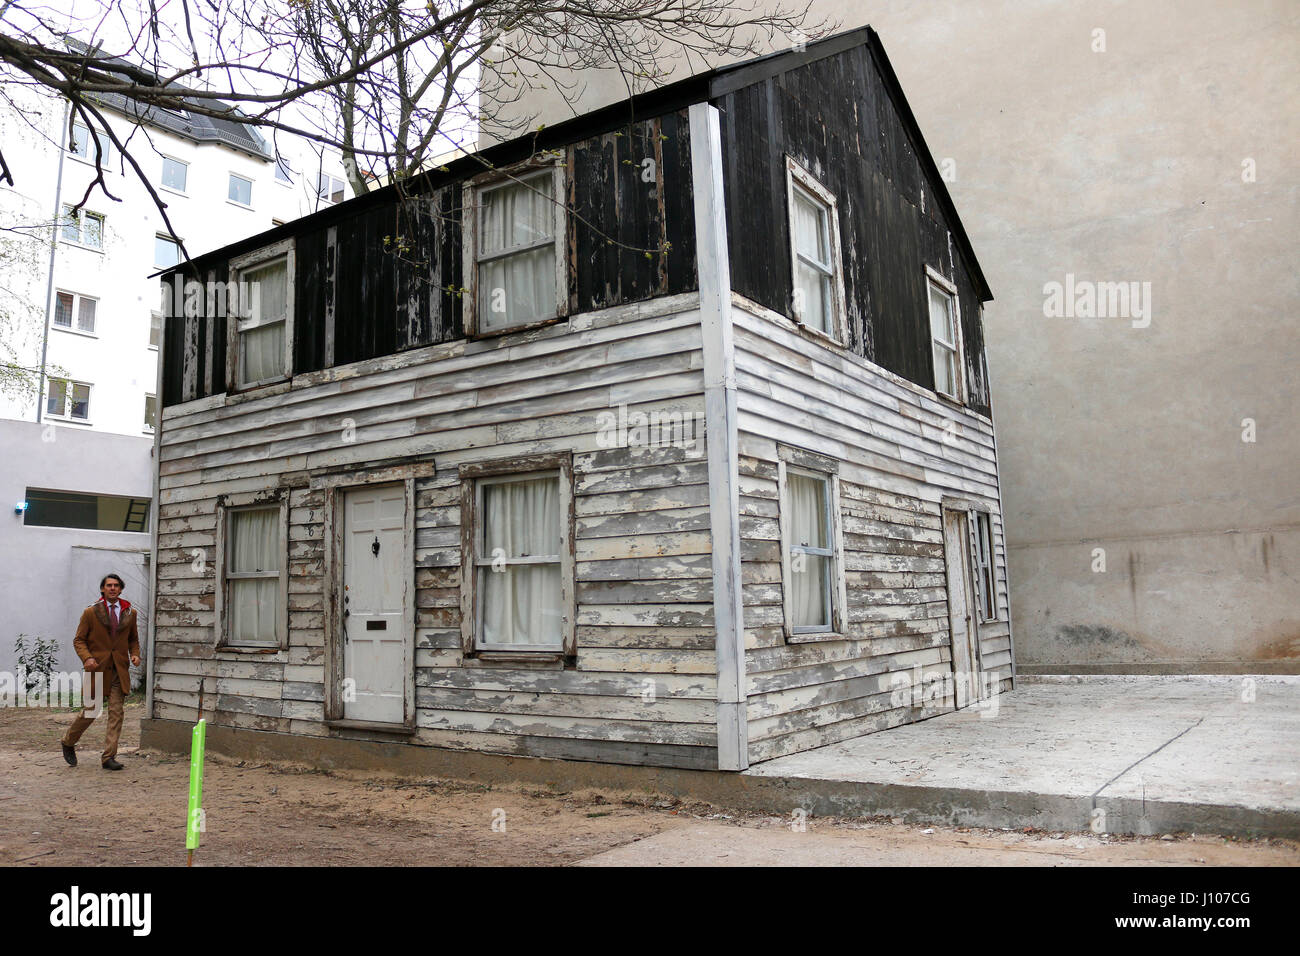 Das ehemalige Wohnhaus der US-Buergerrechtlerin Rosa Parks, das von dem US-amerikanischen Kuenstler Ryan Mendoza von Detroit nach Berlin transportier Foto Stock